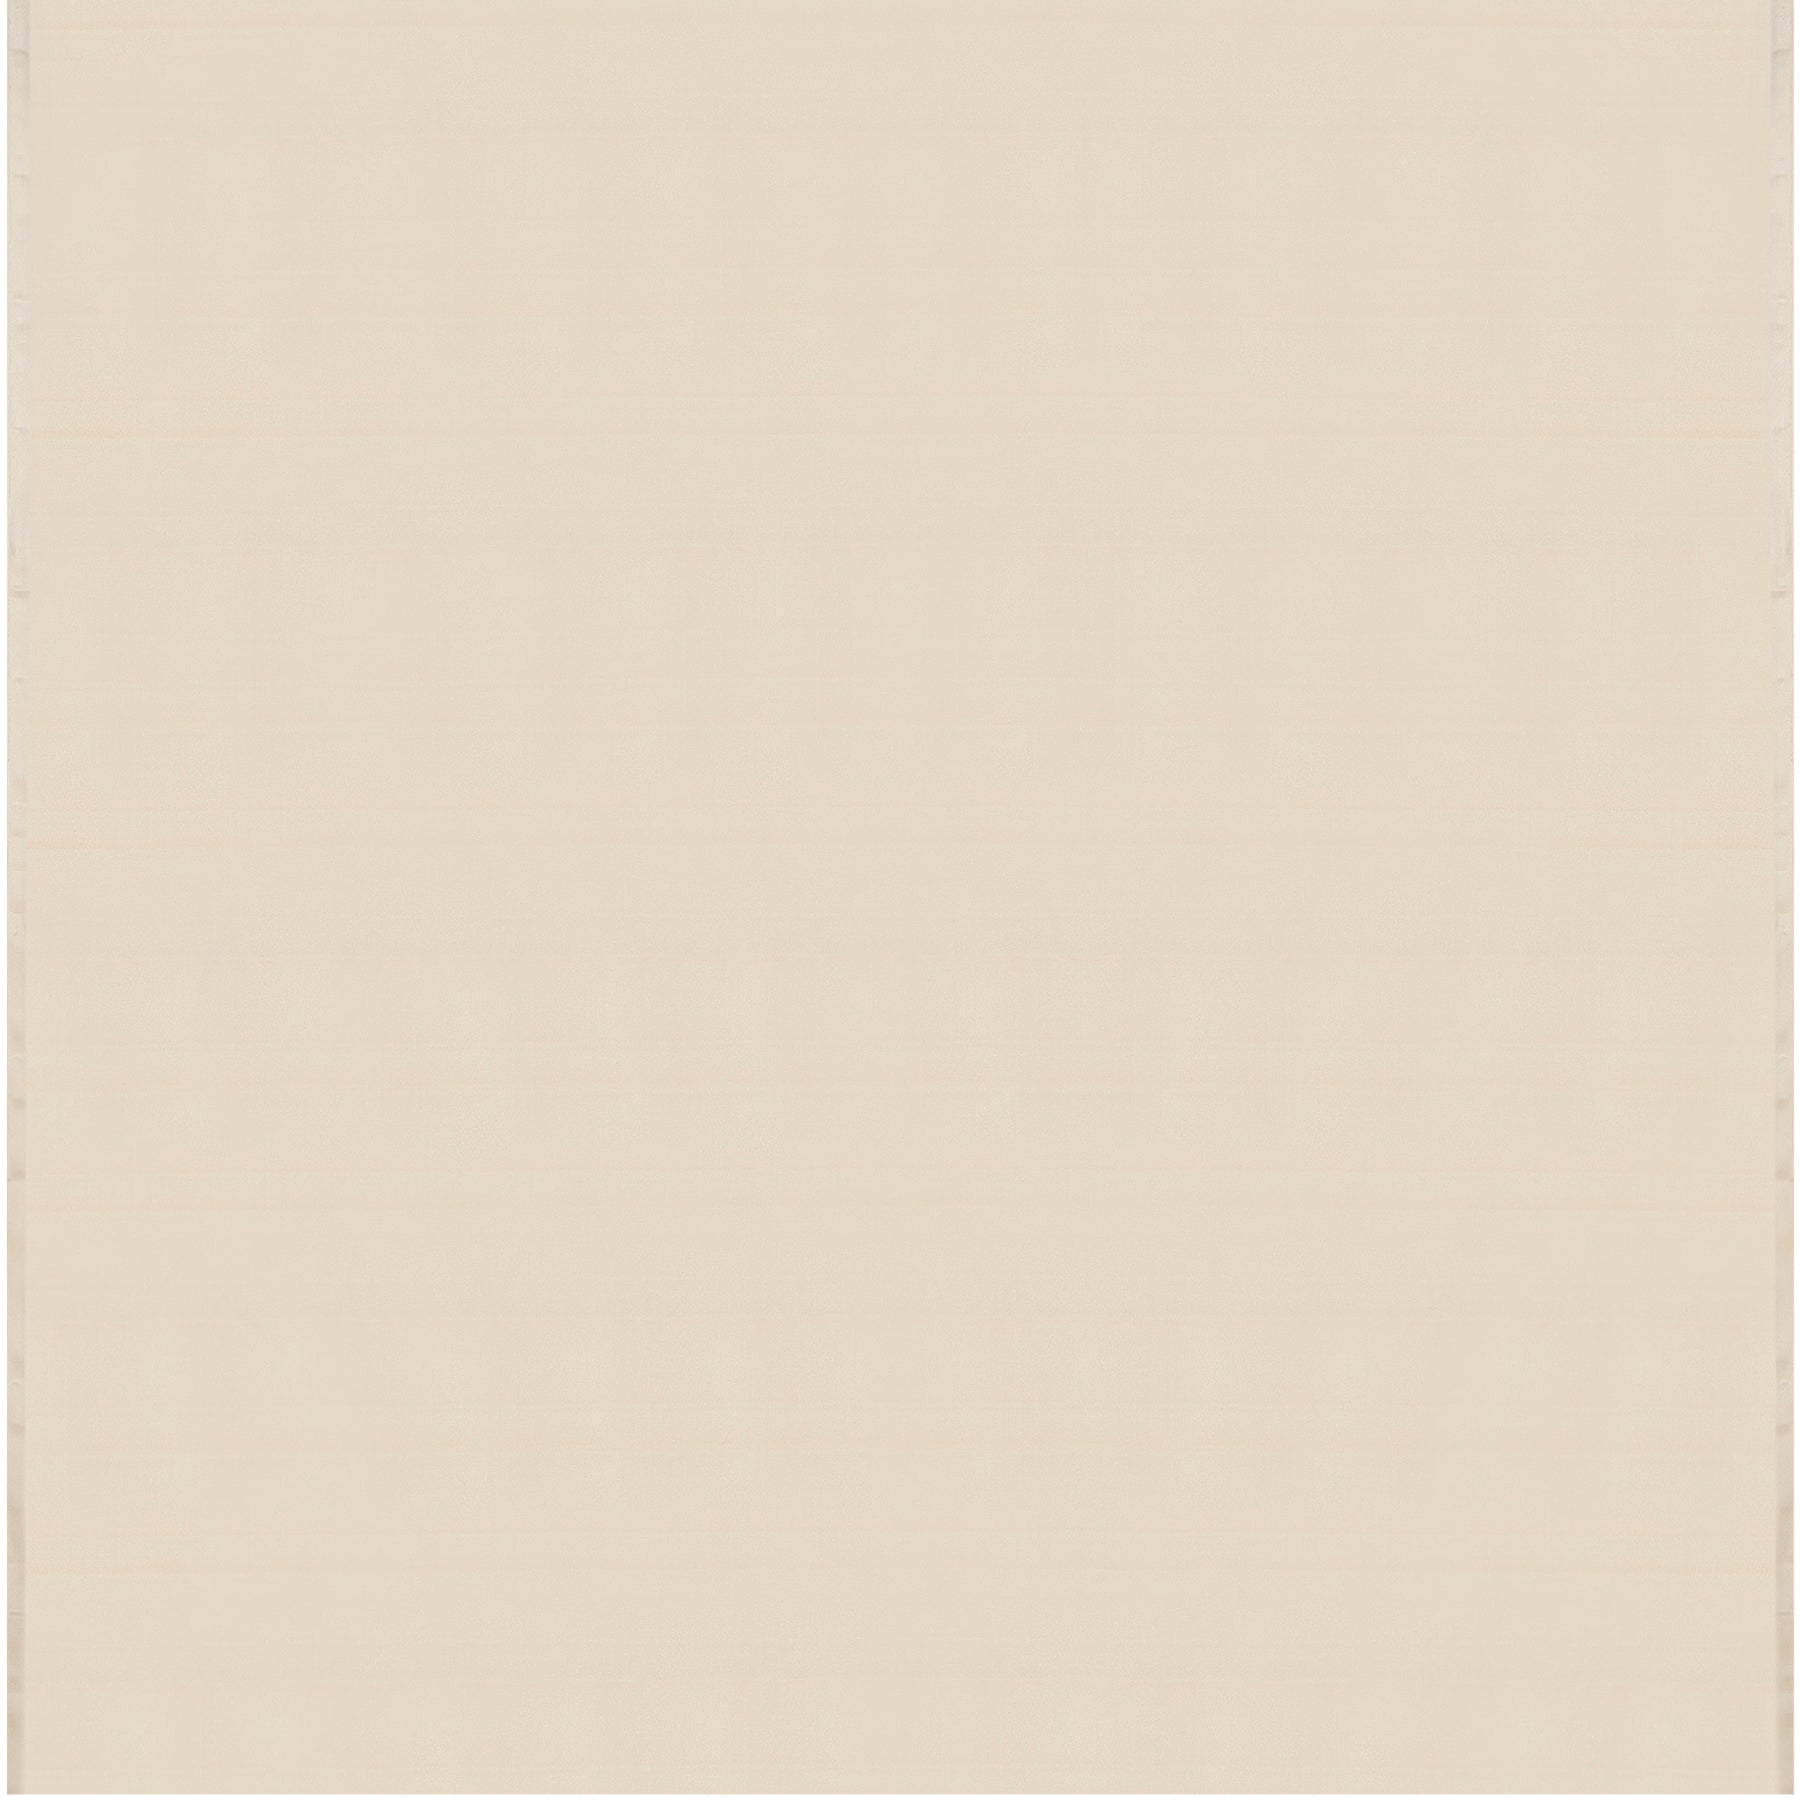 Kanakavalli Kanjivaram Silk Fabric Length 23-110-HF001-11763 - Full View